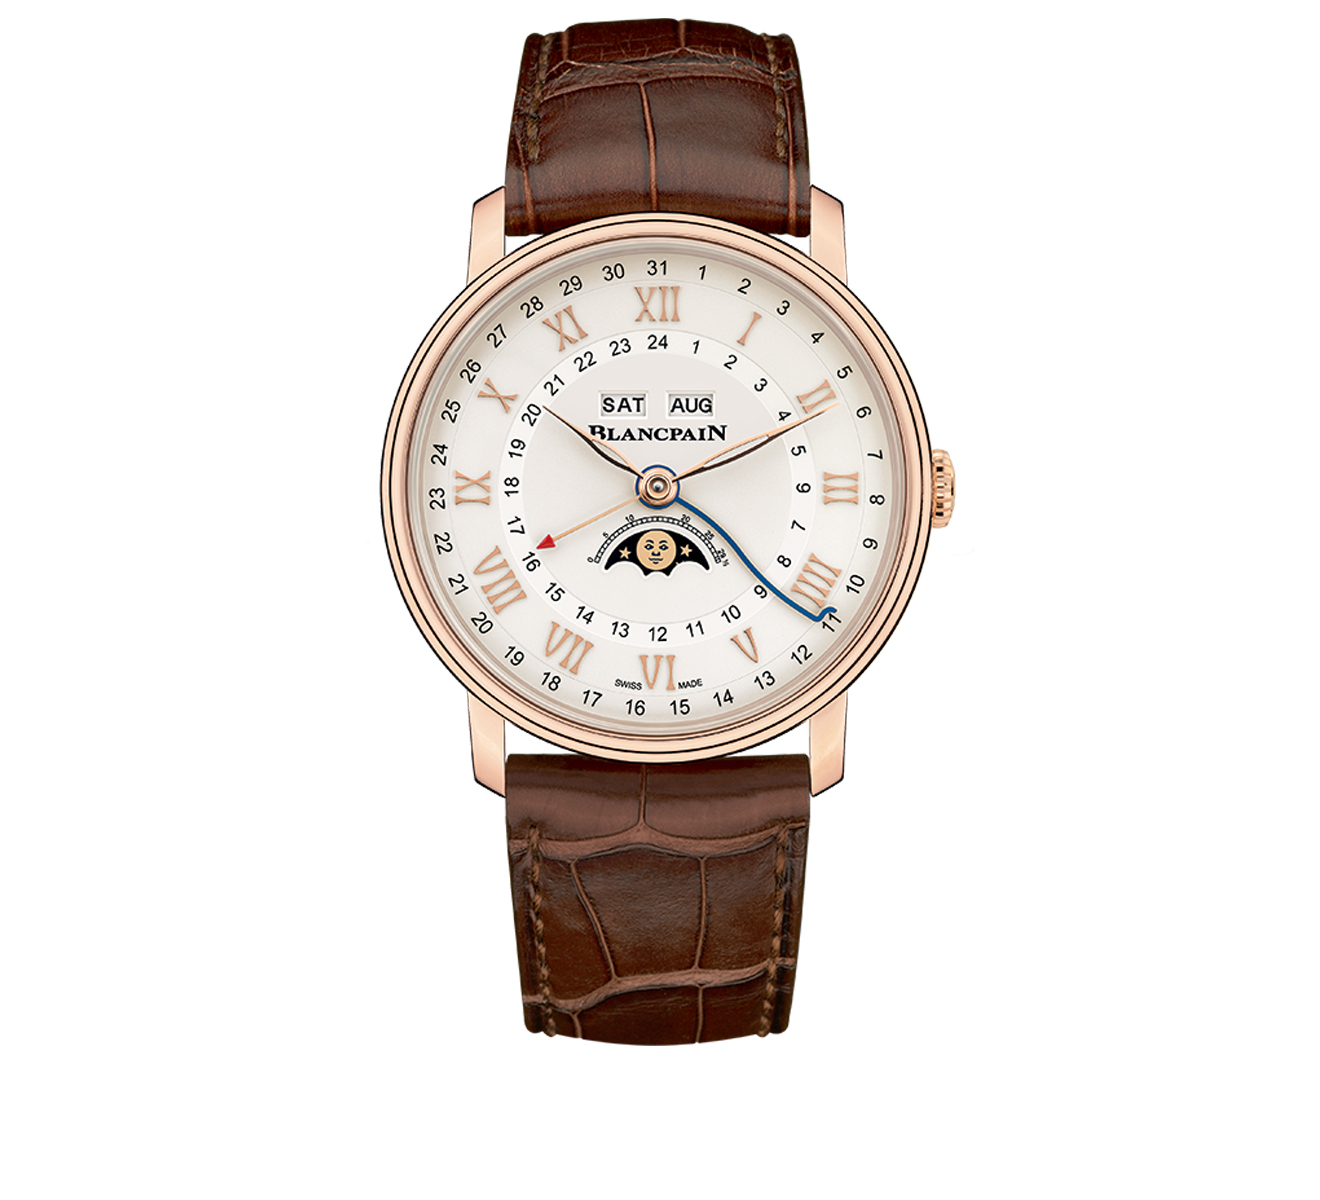 Часы Quantième Complet GMT Blancpain Villeret 6676 3642 55A - фото 1 – Mercury